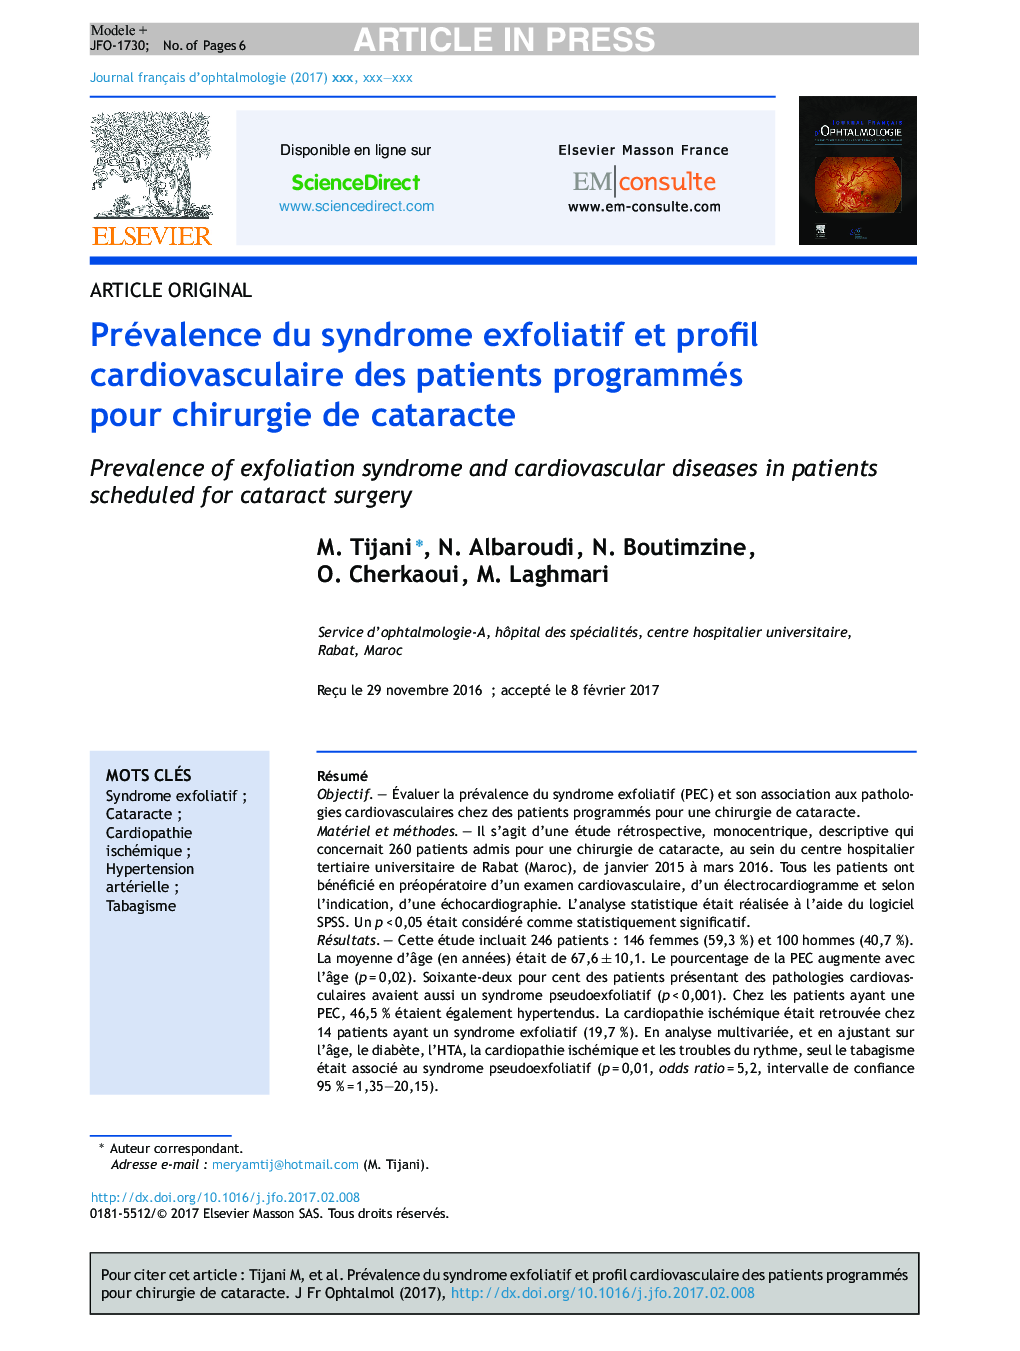 Prévalence du syndrome exfoliatif et profil cardiovasculaire des patients programmés pour chirurgie de cataracte